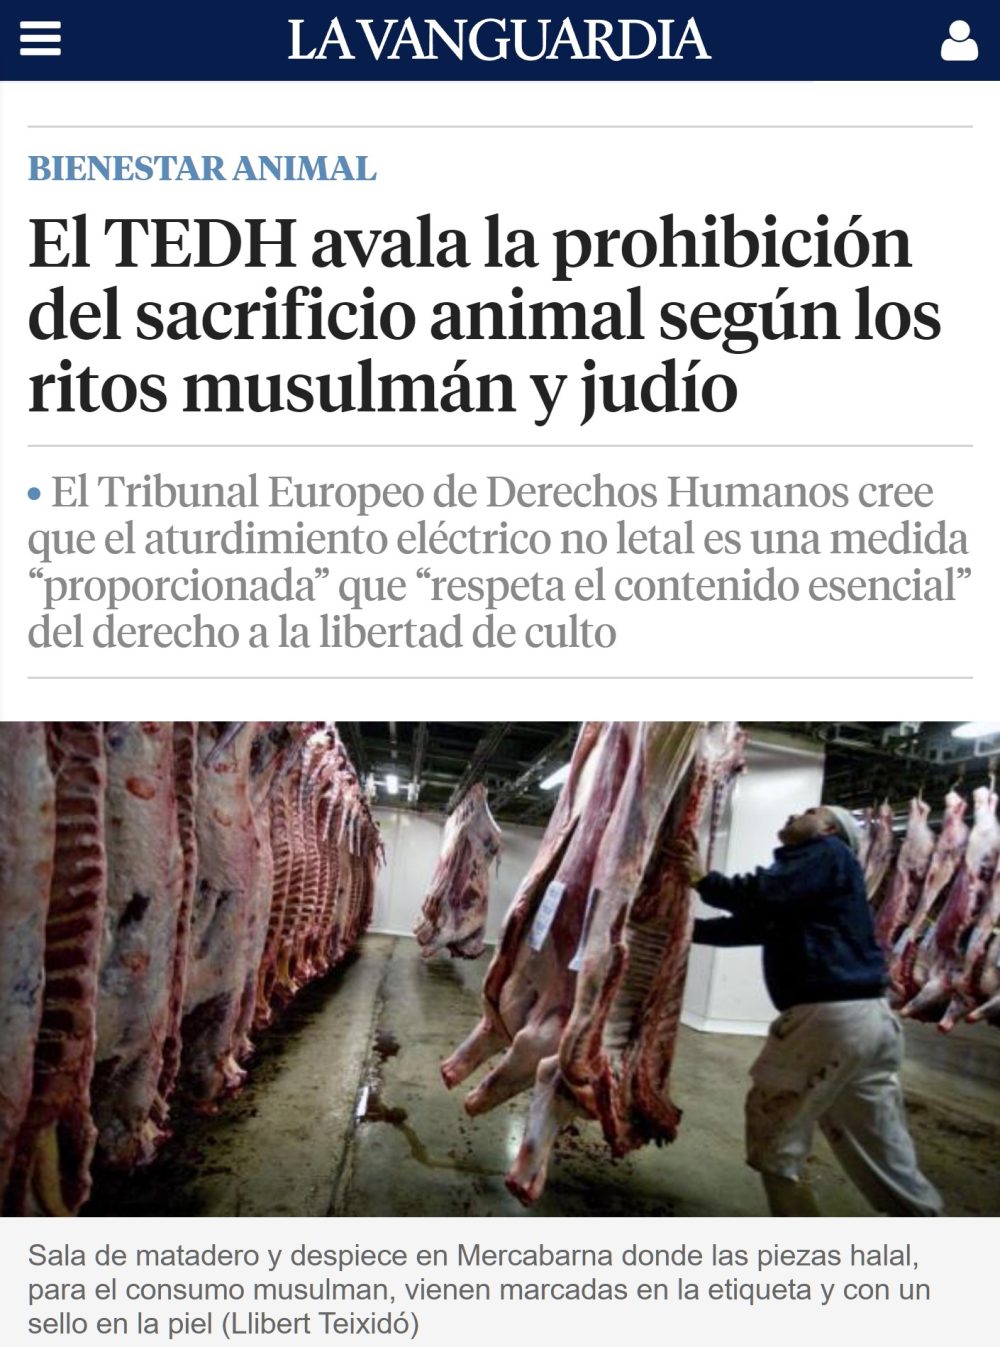 El Tribunal Europeo de Derechos Humanos avala la prohibición del sacrificio animal según el rito musulmán y judío